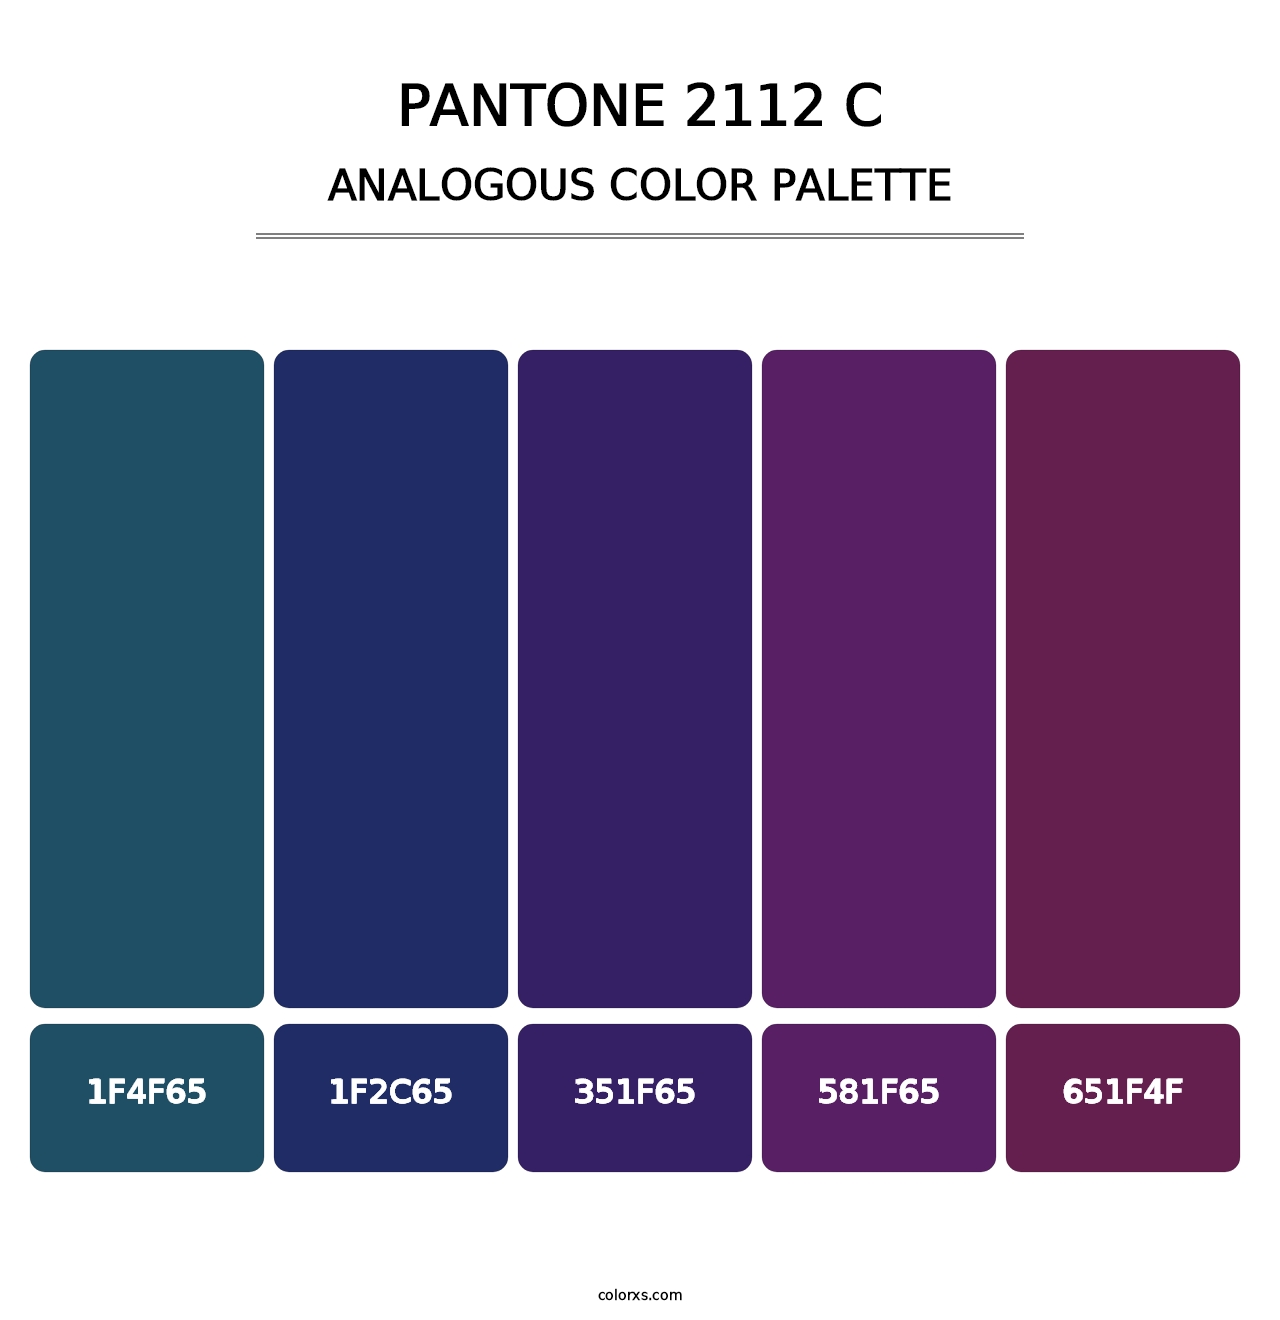 PANTONE 2112 C - Analogous Color Palette